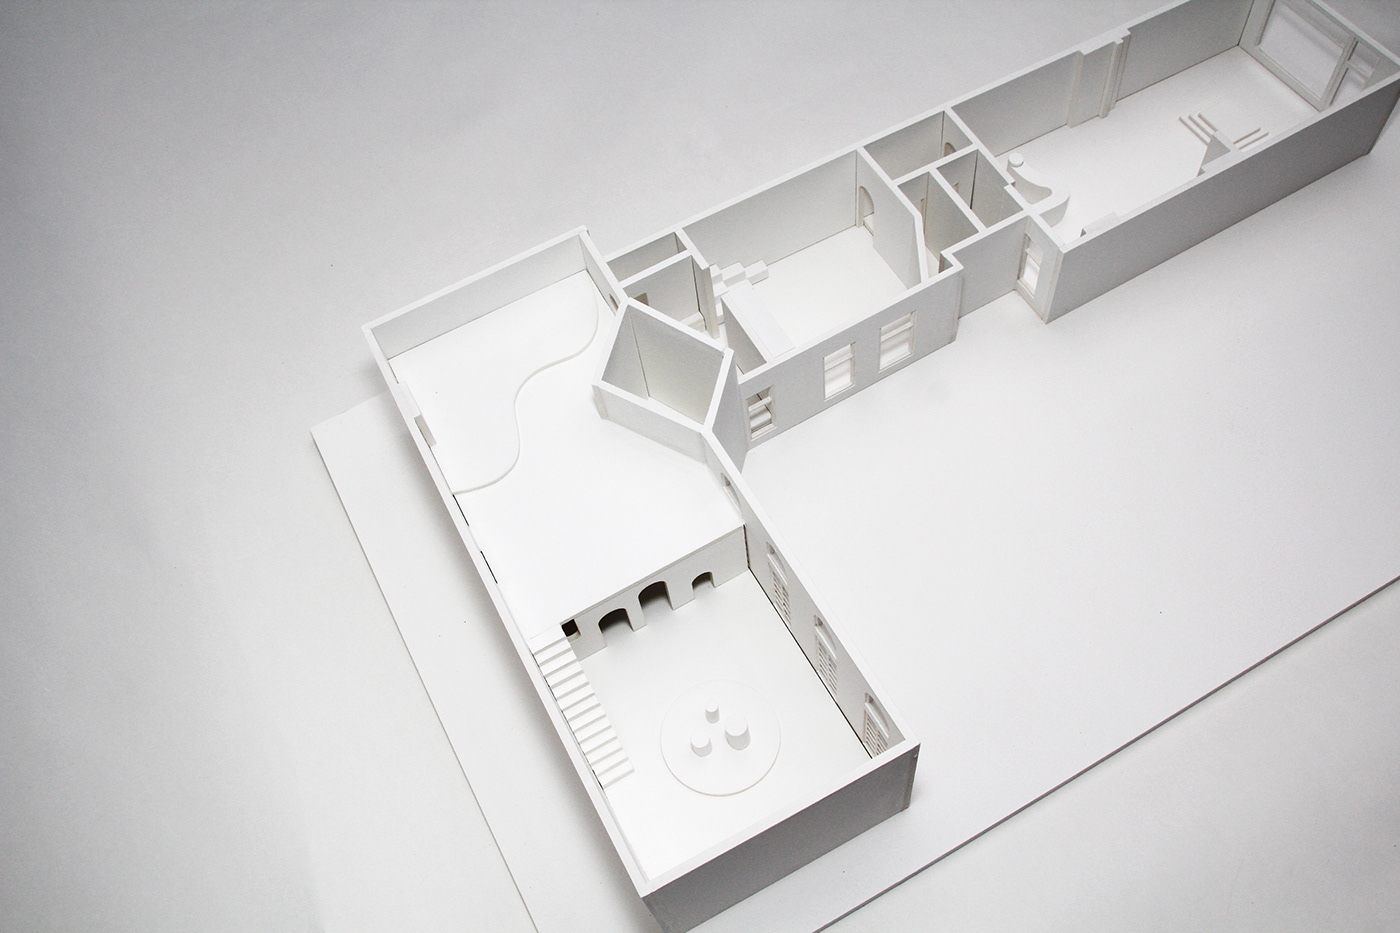 architectural model architecture Concept store ignant model Retail design store design